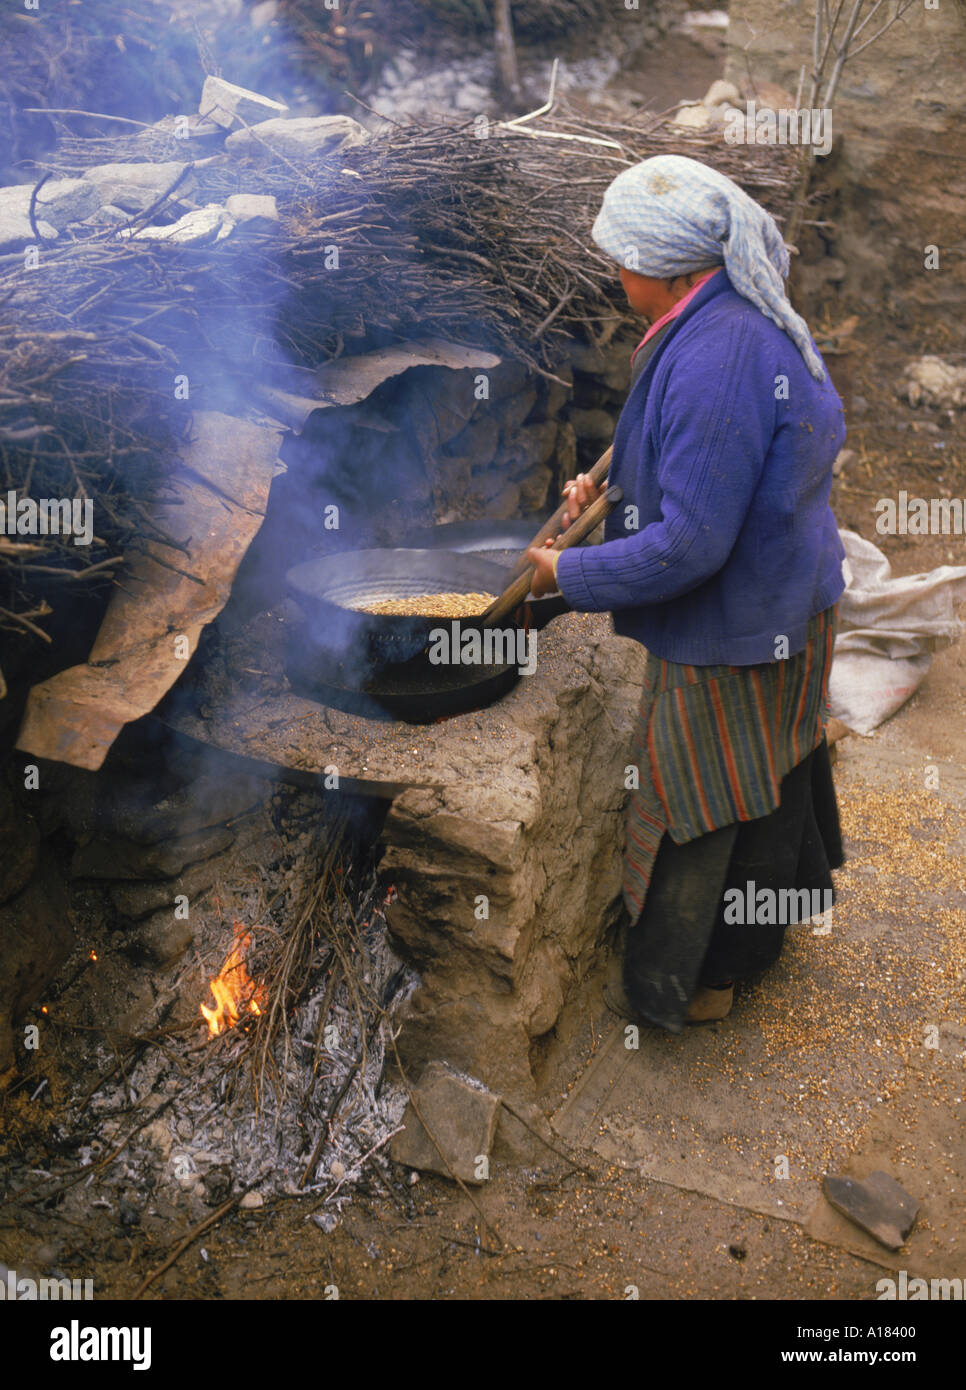 Eine Frau, die bereit für die Herstellung von Tsampa am Nylam in Tibet Asien N Blythe Gerste rösten Stockfoto